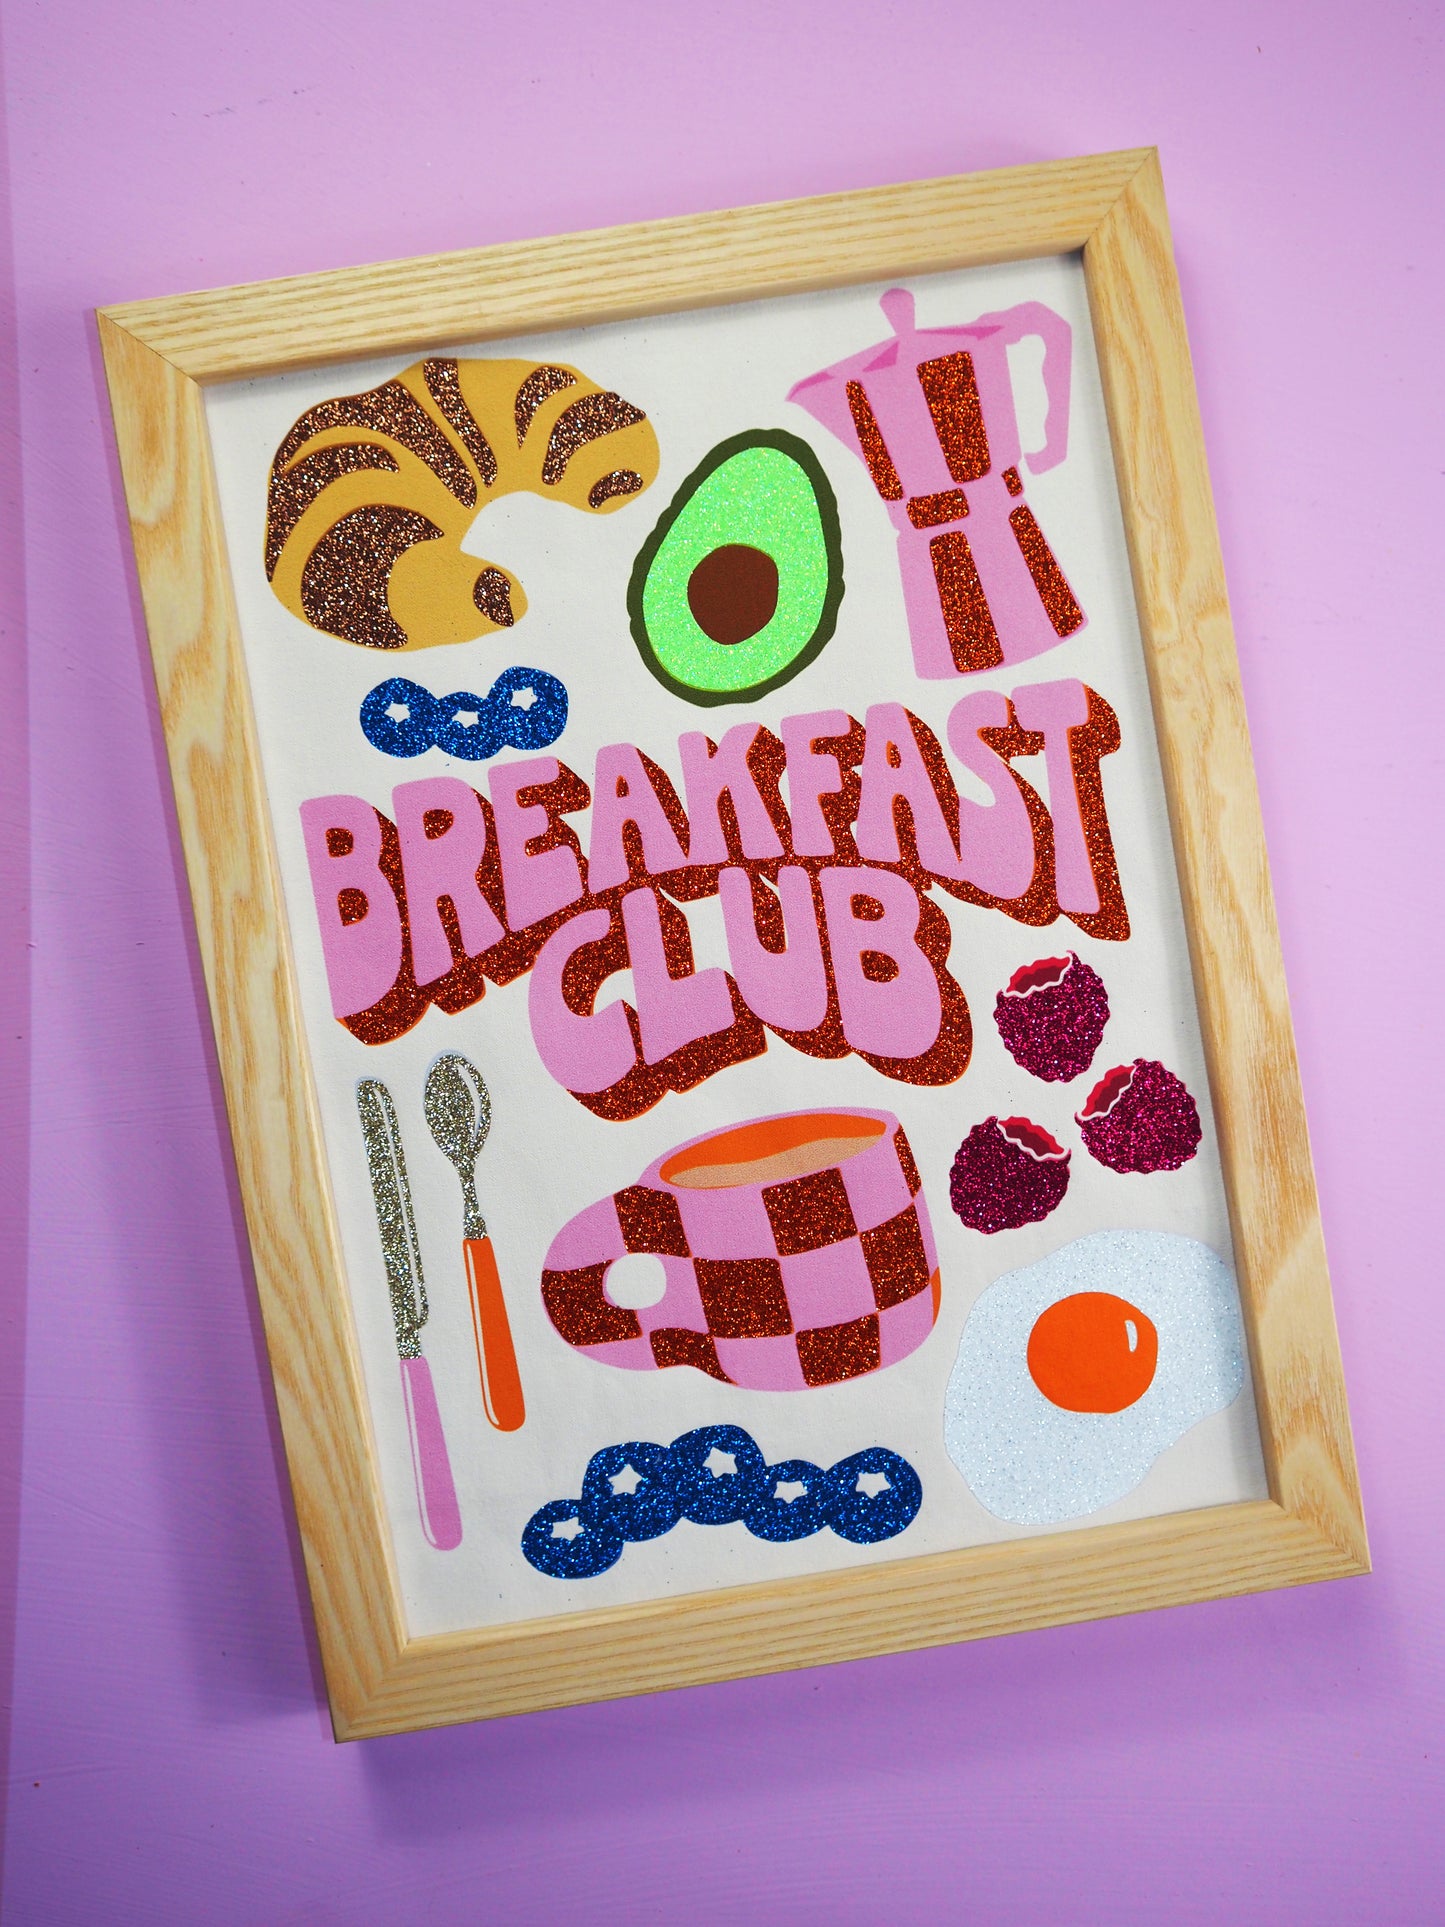 Breakfast Club Fabric Print